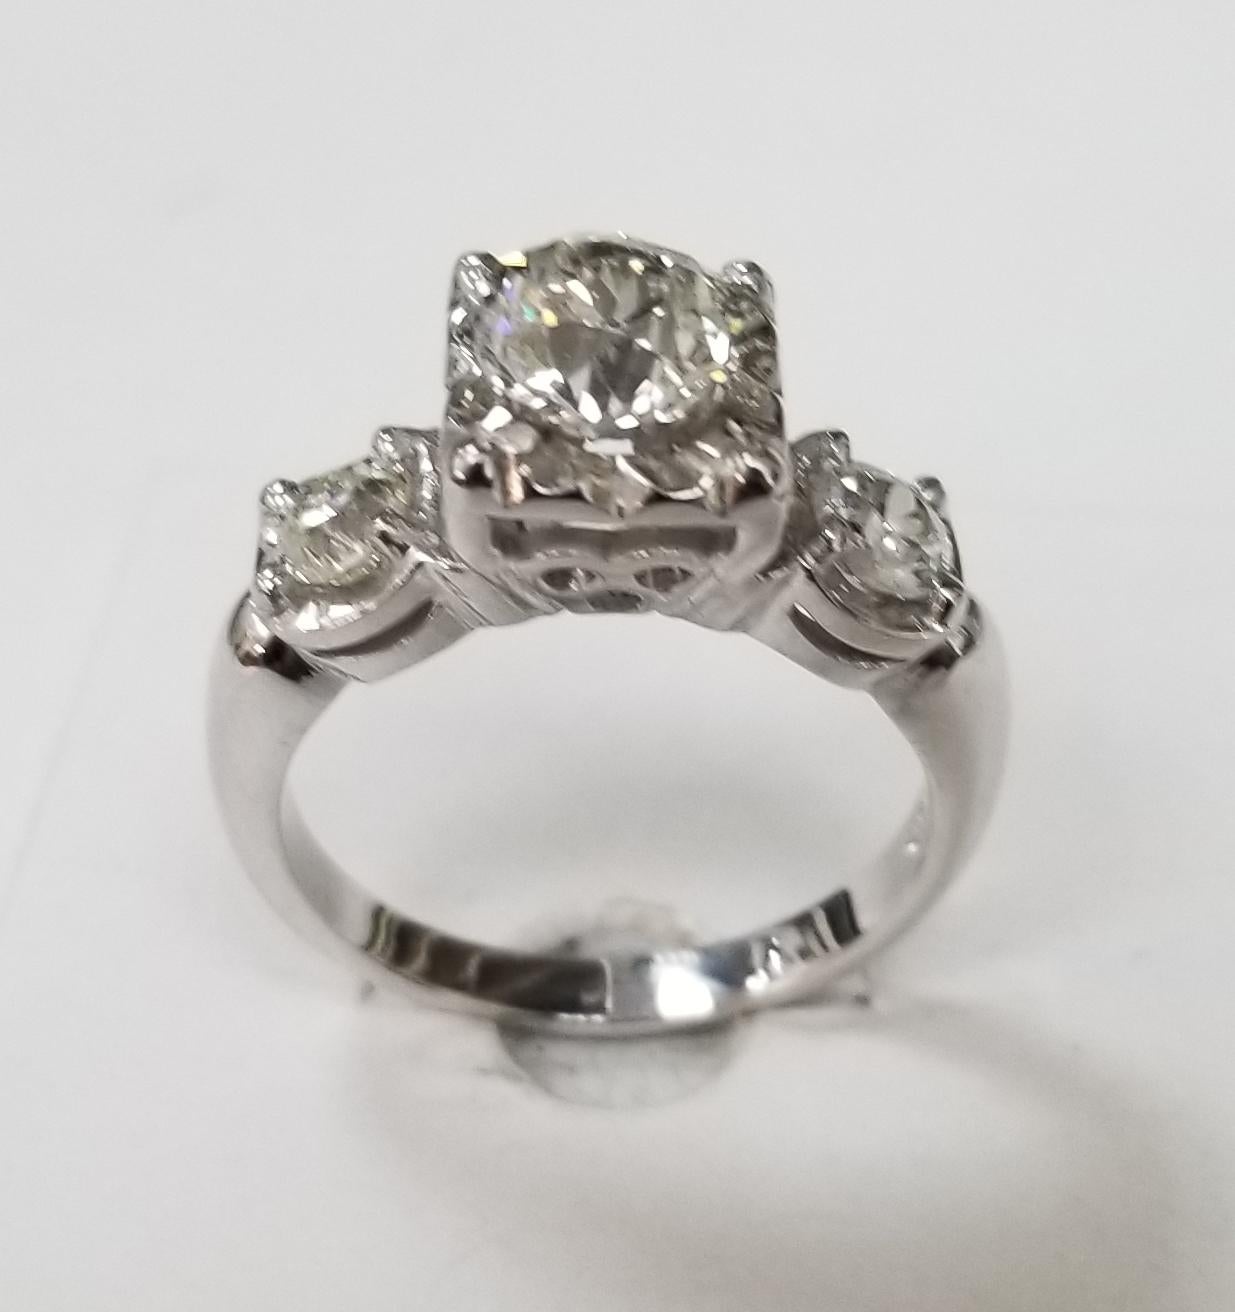 Vintage Old Euro Cut 3 Stein Ring Gesamtgewicht 1,27cts., mit 3 Euro-Cut-Diamanten; Farbe H  mit 2 seitlichen Diamanten im Euro-Schliff. Der Ring ist Größe 6 und kann kostenlos angepasst werden.